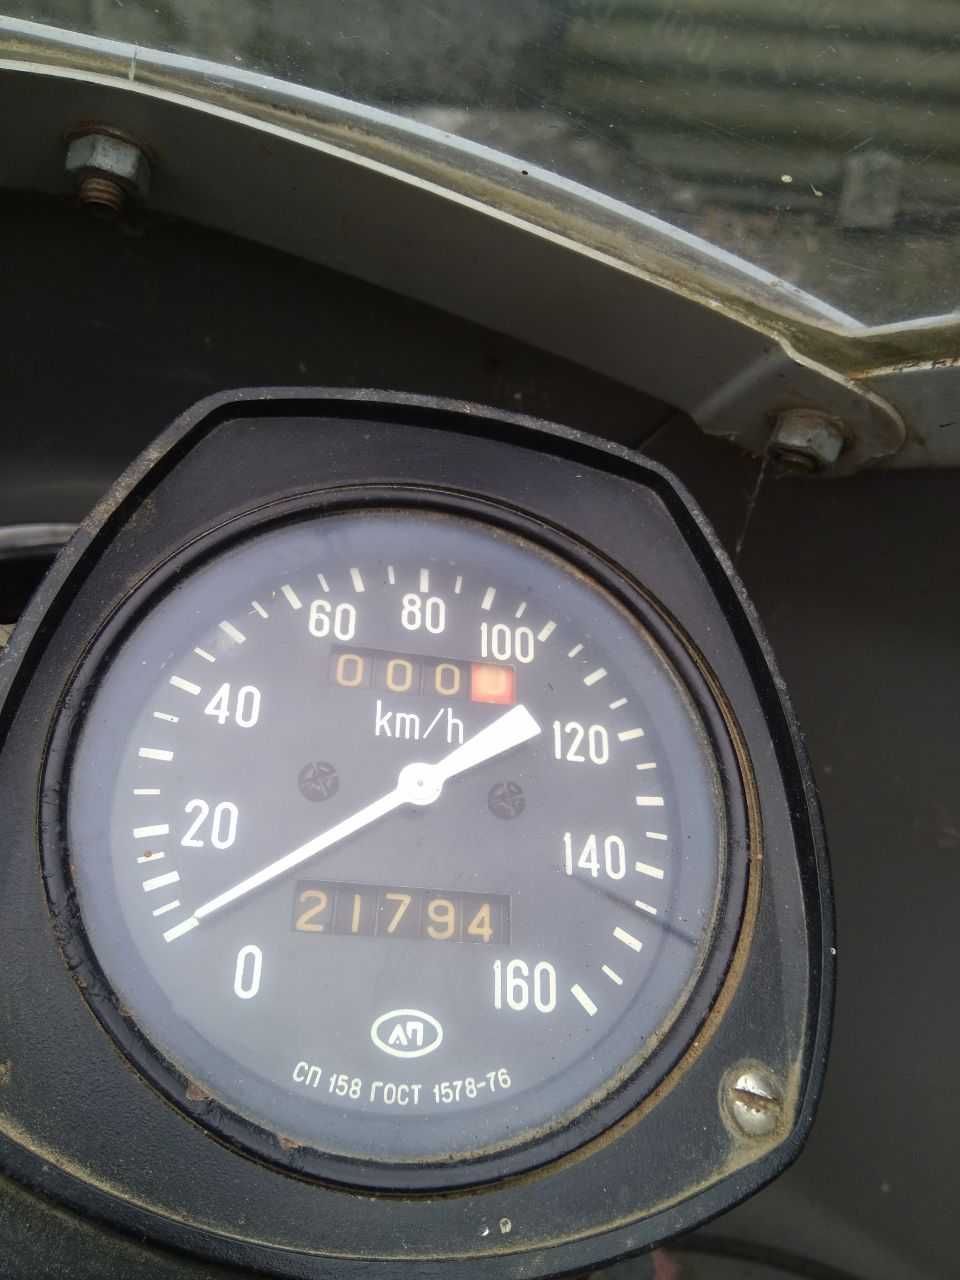 Мотоцикл ИЖ 1991 г, пробег 21000, с коляской, заводской комплект